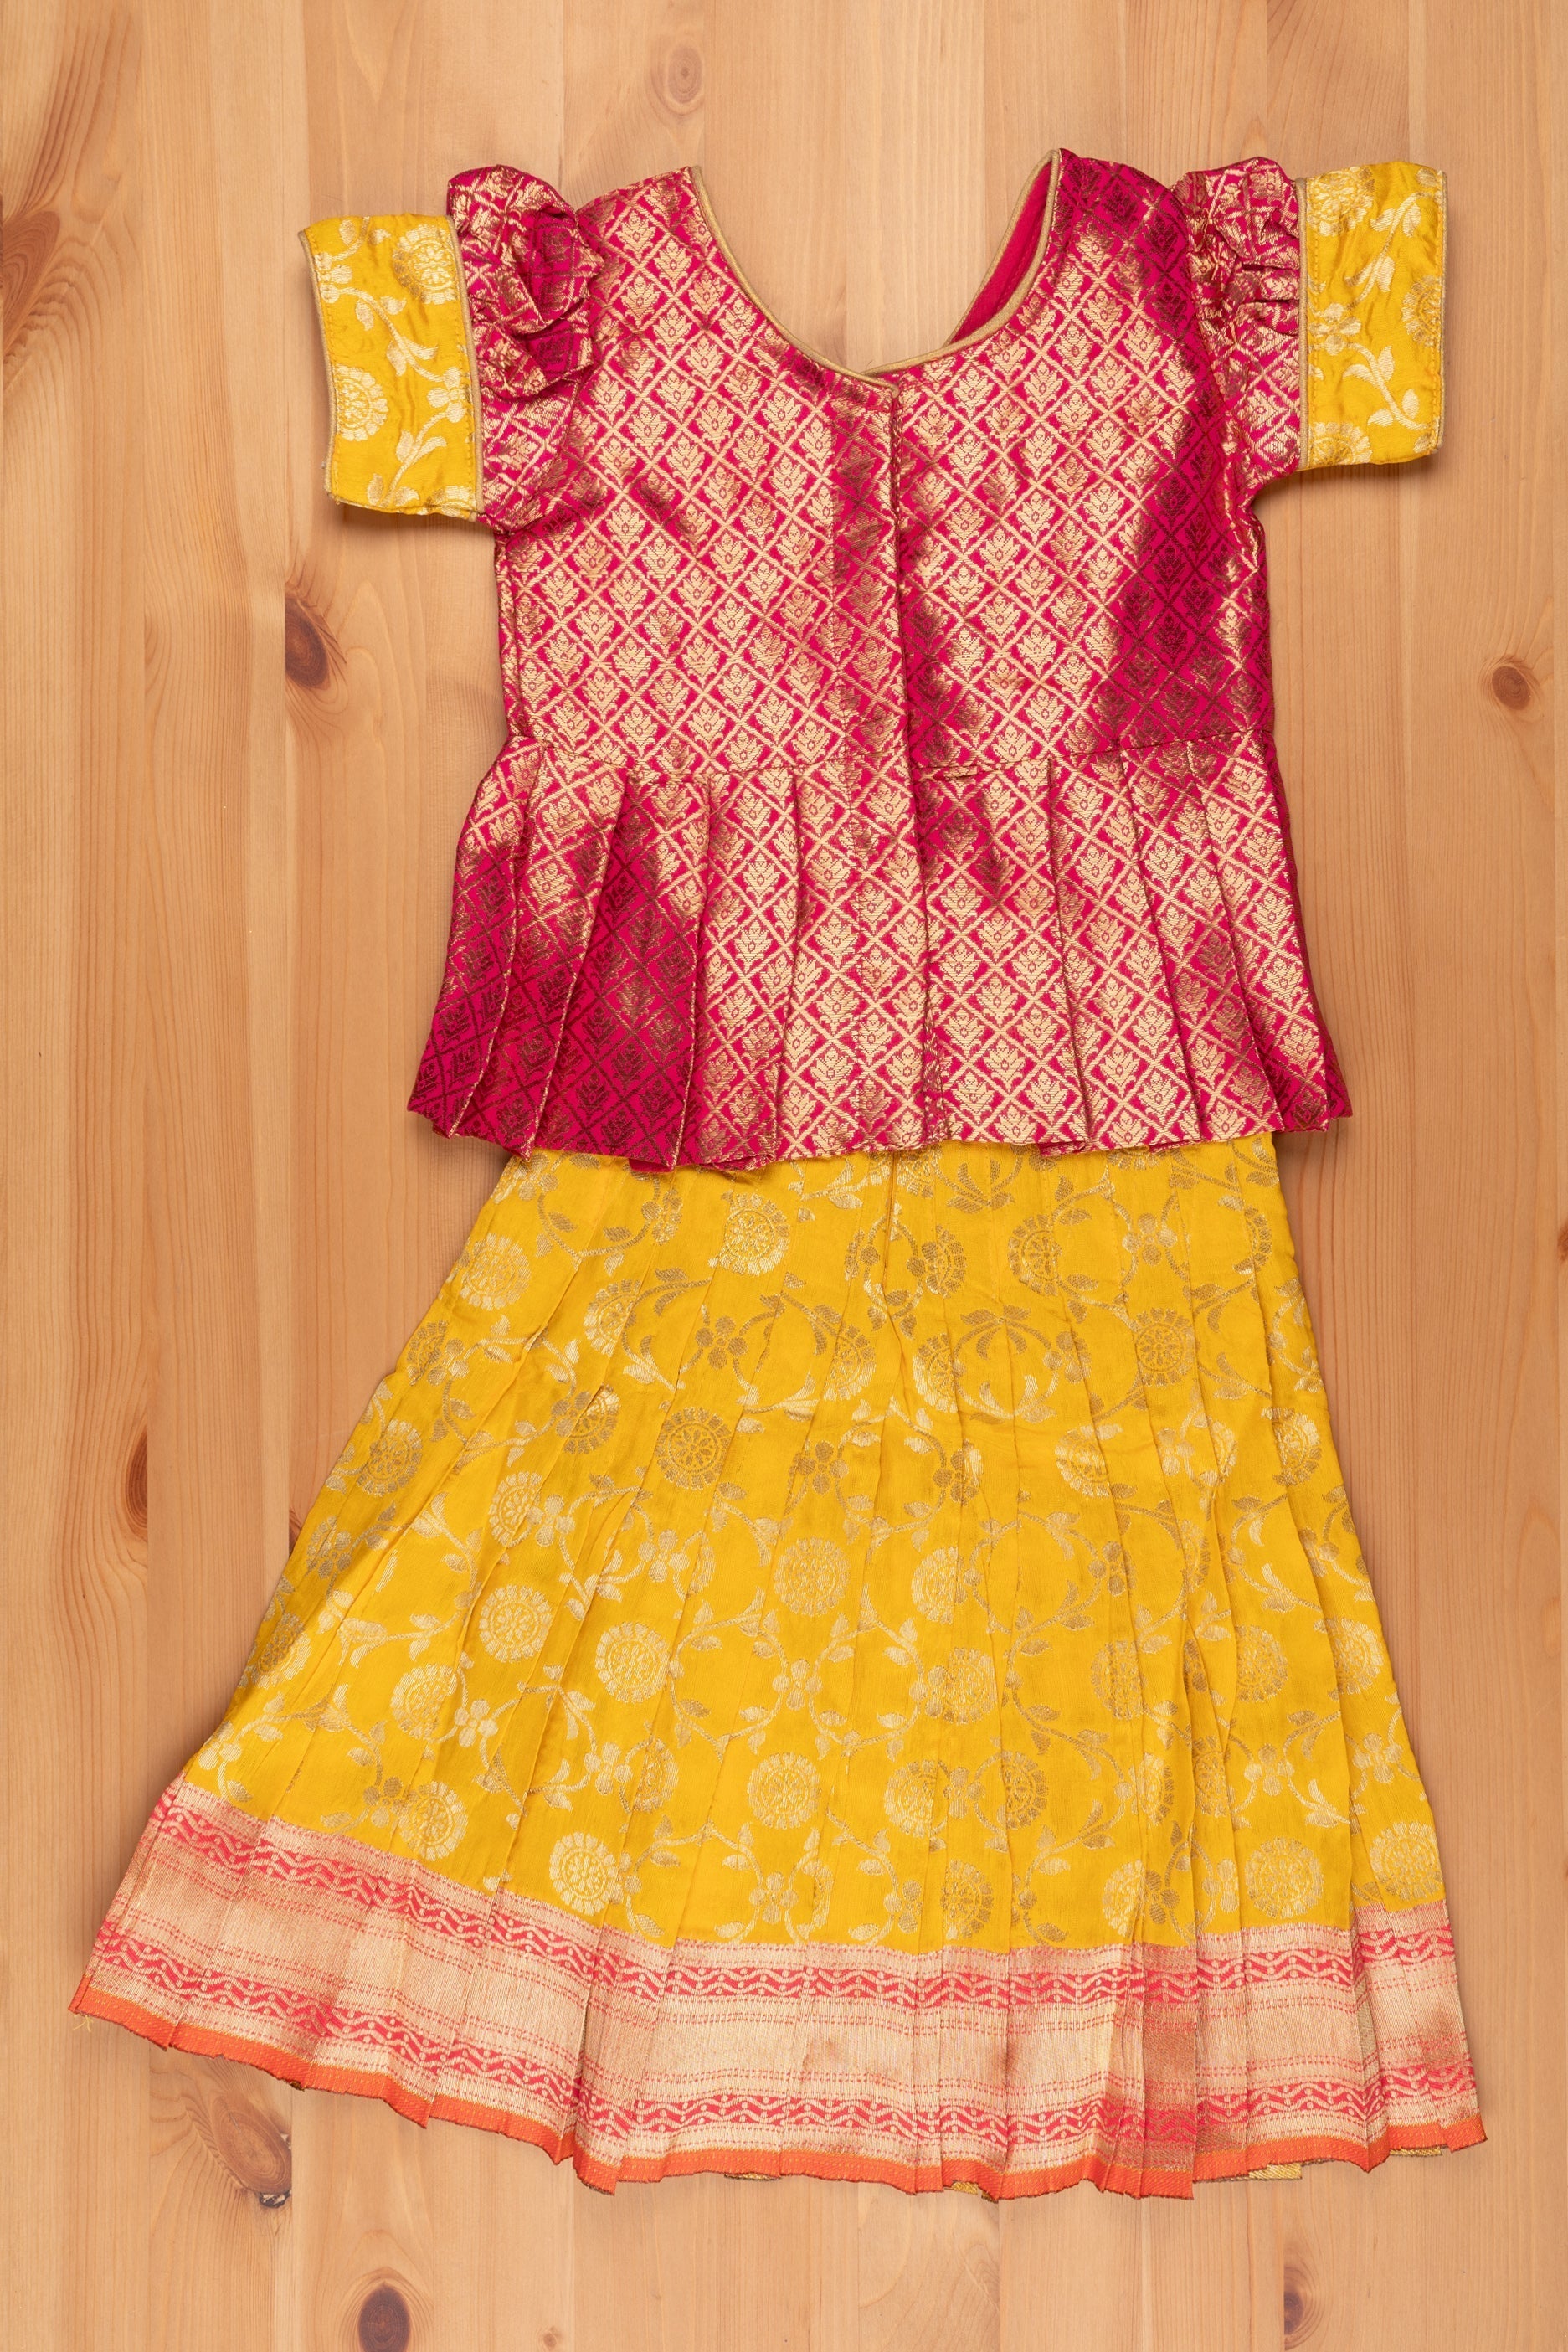 nesavu langa brocade peplum blouse paired with banarasi pattu pavadai chattai traditional silk dress for girls pattu pavadai thenesavu traditional girls pavadai sattai langa voni patt 54b1c82b 4601 486f b337 f86a2fd450b6